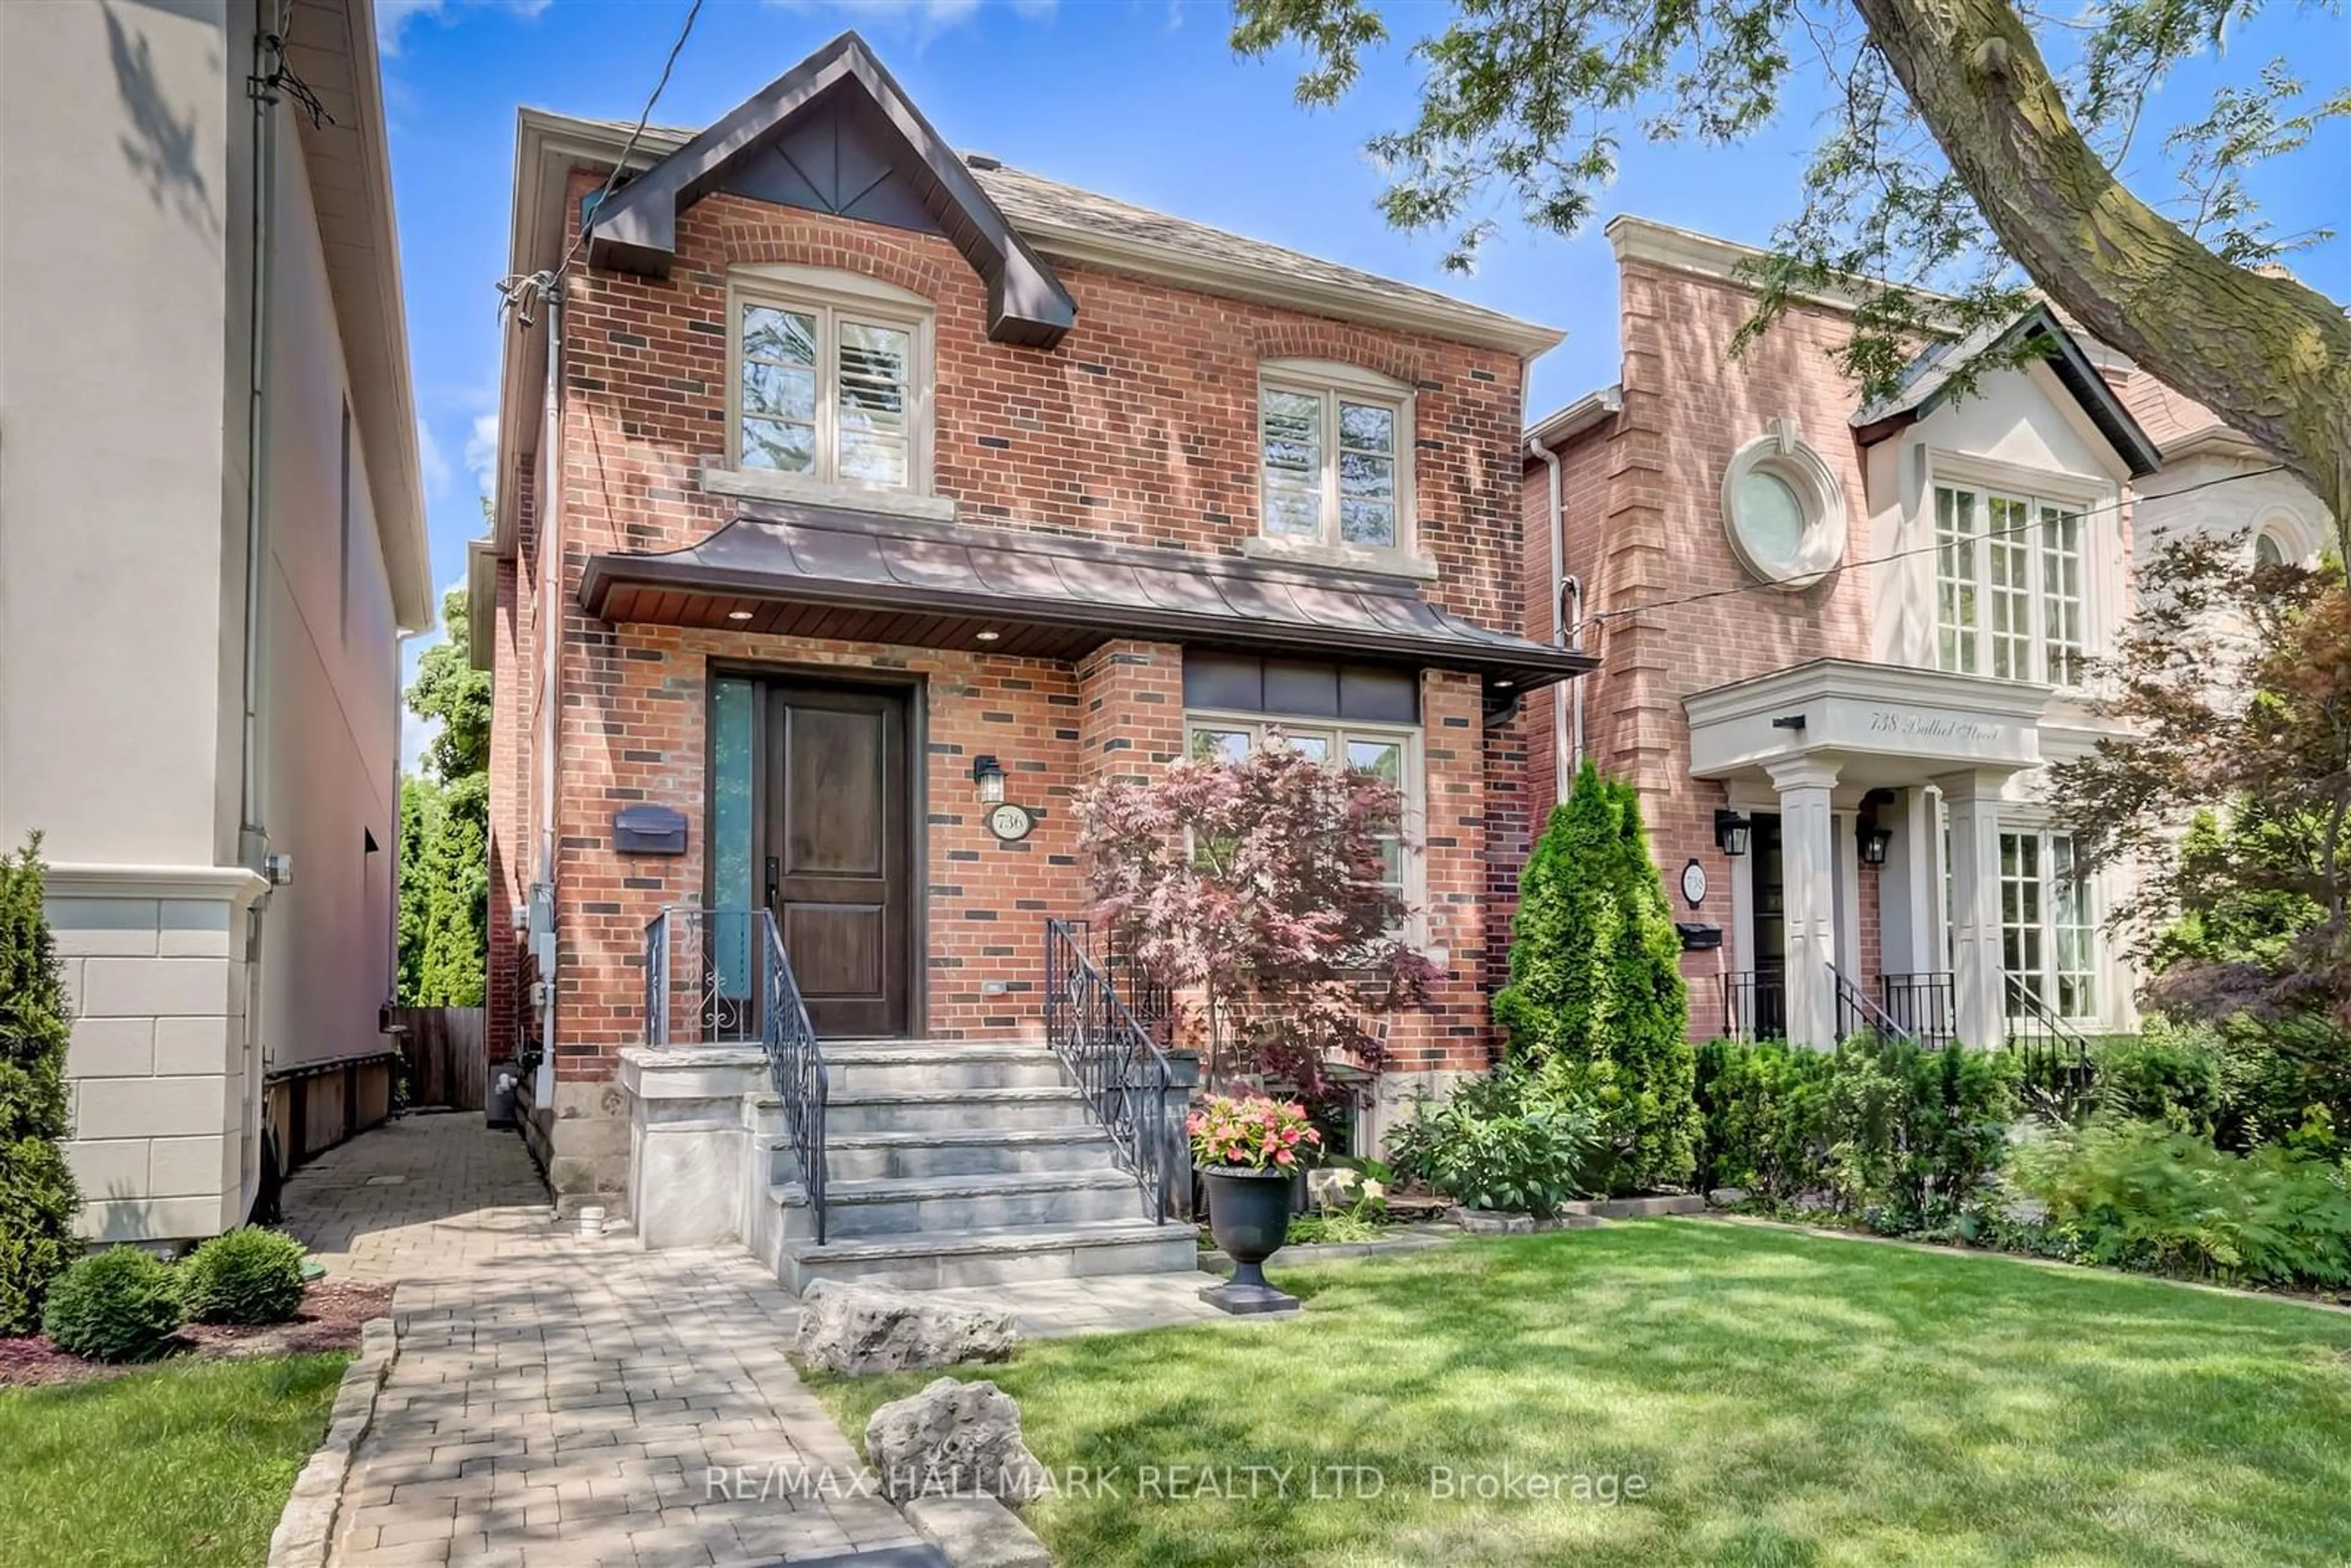 Home with brick exterior material for 736 Balliol St, Toronto Ontario M4S 1E7